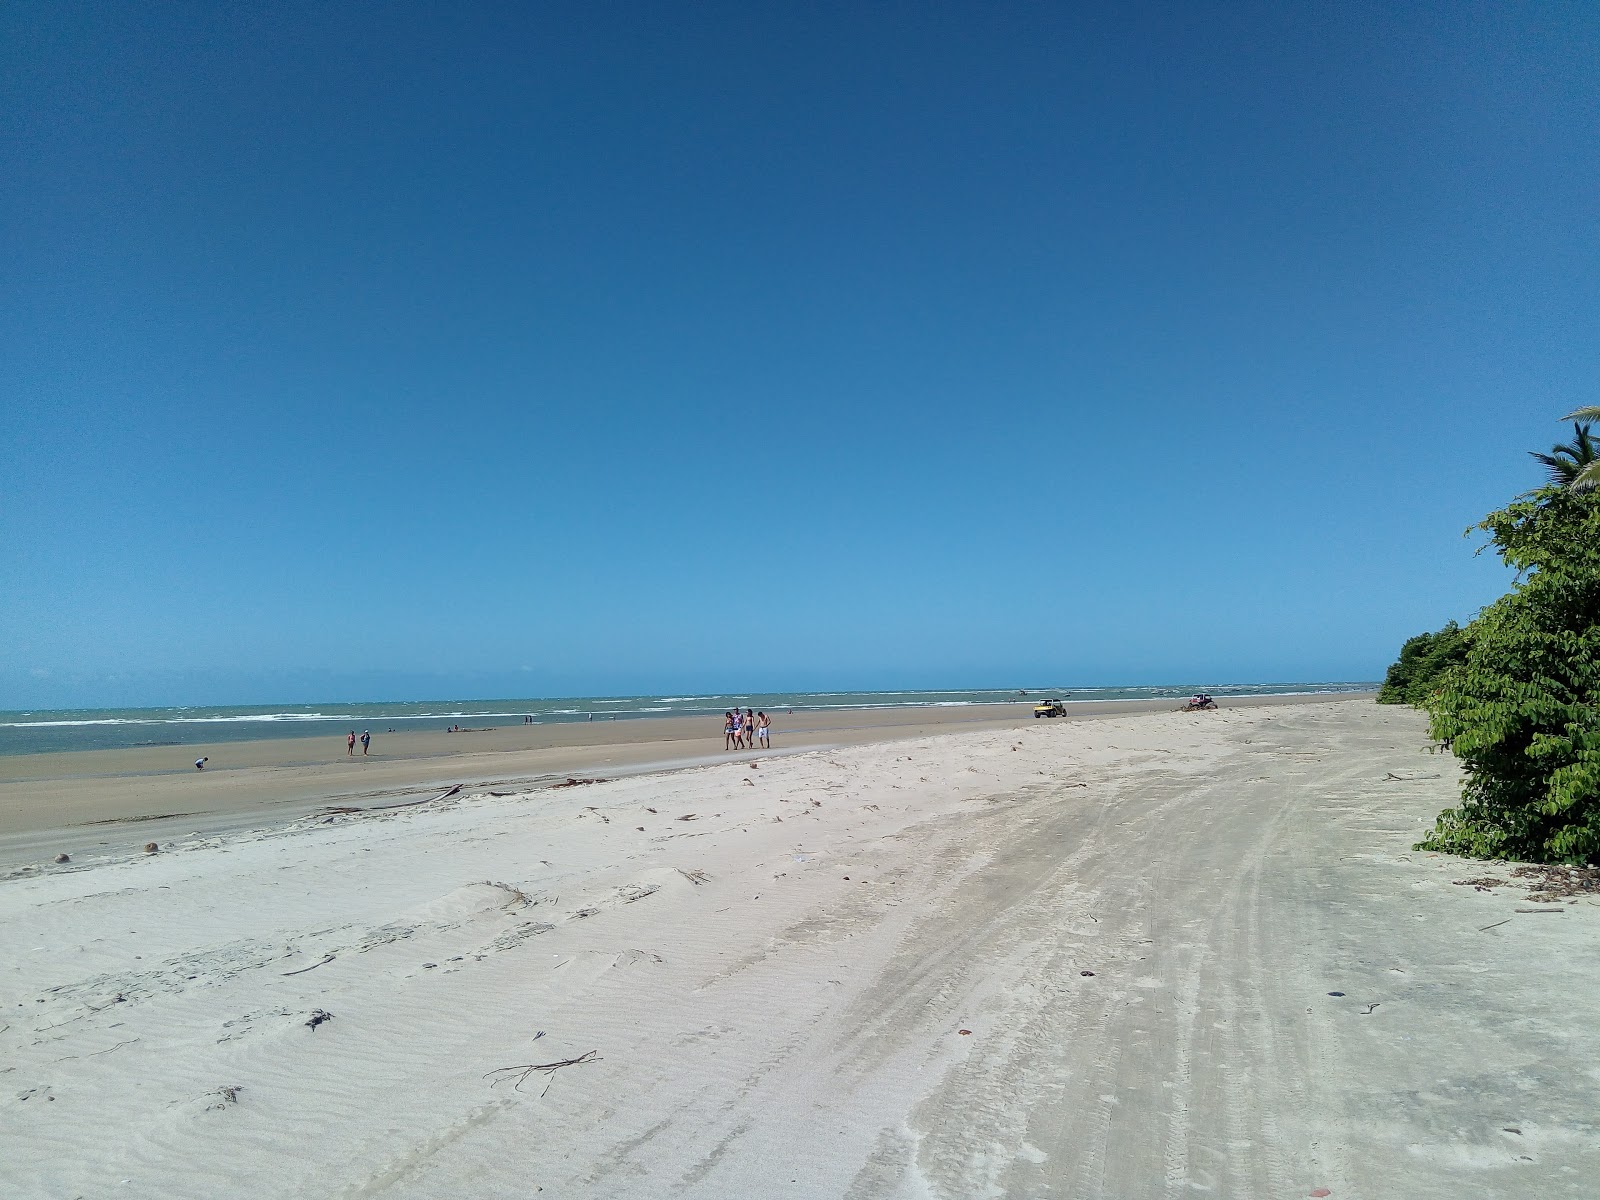 Fotografie cu Praia da Baleia cu o suprafață de nisip strălucitor